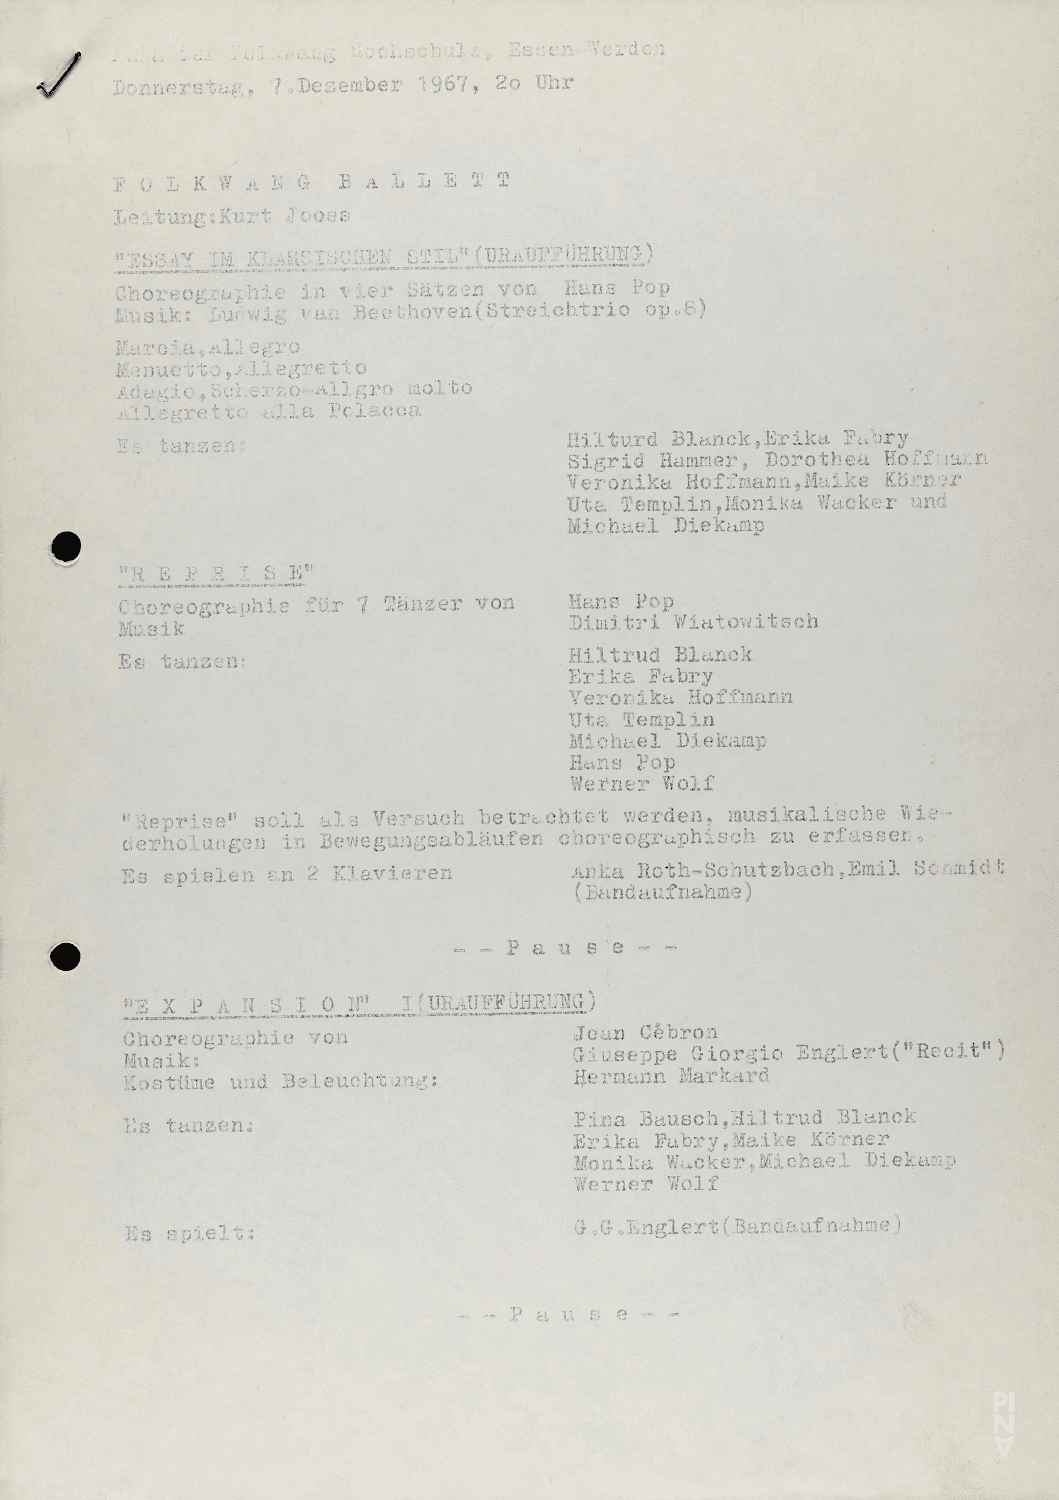 Programme pour « Fragment » de Pina Bausch avec Folkwangballett, « Essay im klassischen Stil » de Hans Pop, « Expansion I » de Jean Cébron et « Icarus » de Lucas Hoving à Essen, 7 décembre 1967